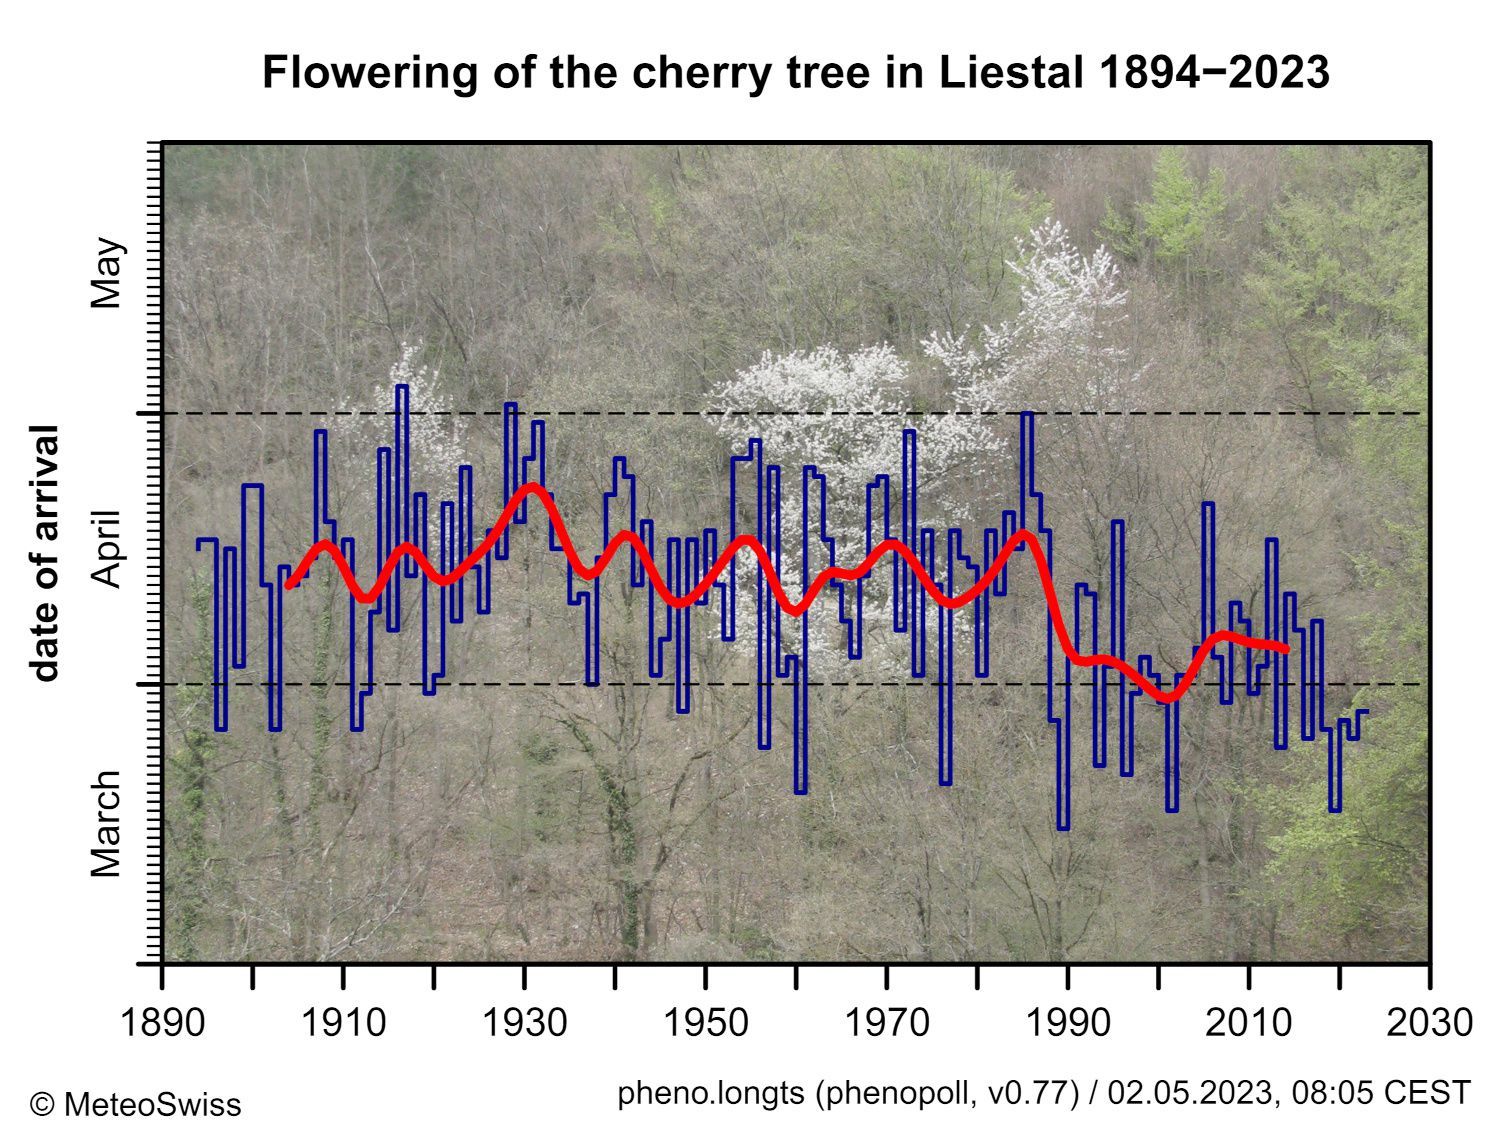 Blüte des Kirschbaums in Liestal-Weideli seit 1894. Die rote Linie zeigt das 20-jährige gewichtete Mittel (Gaußscher Tiefpaßfilter).